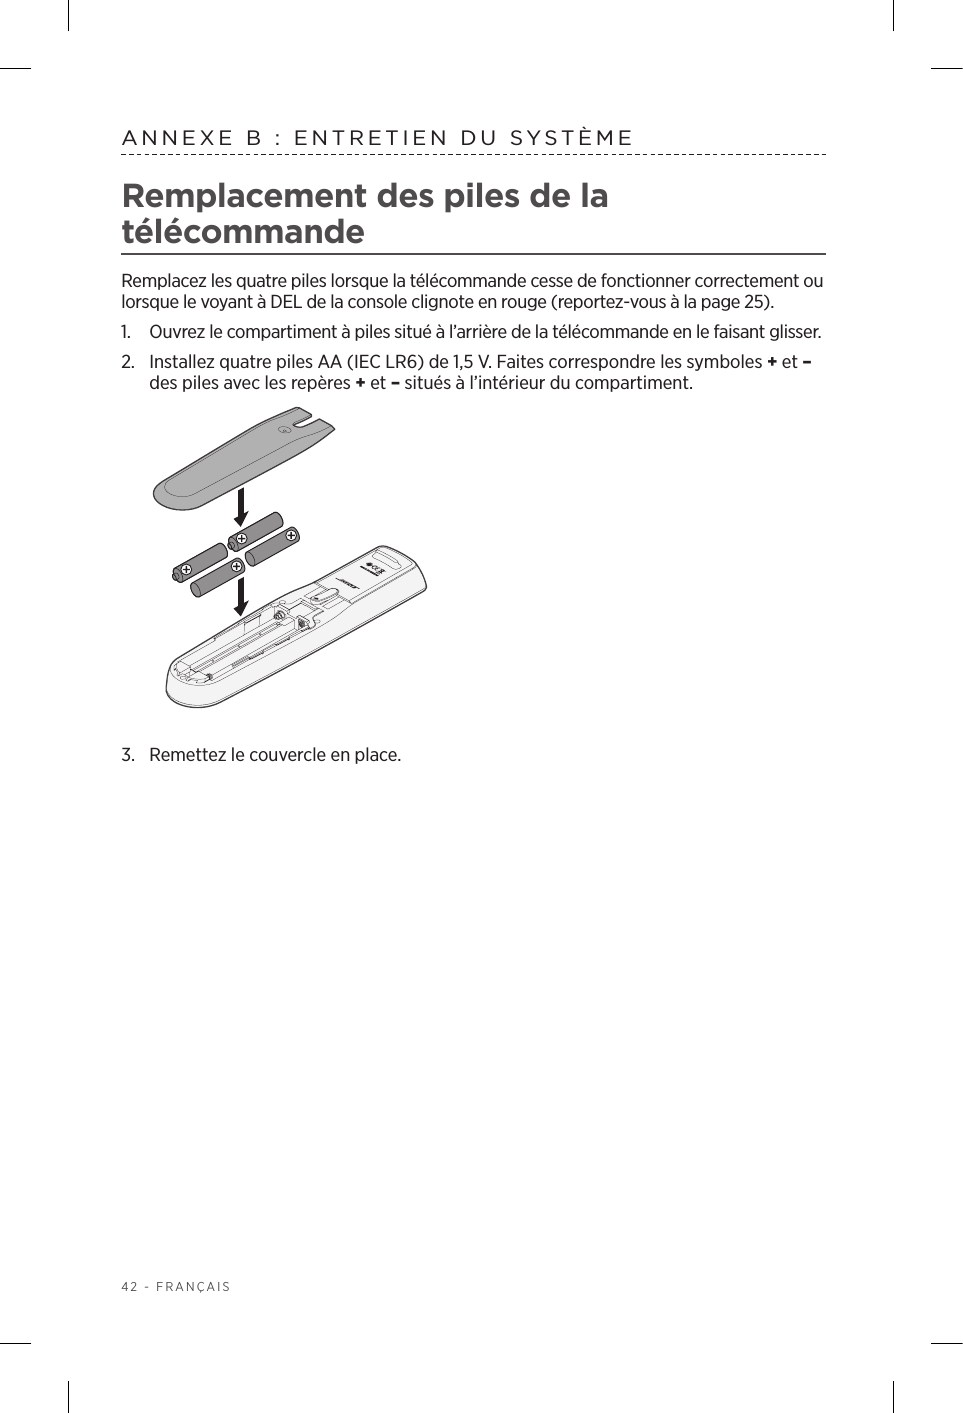 42 - FRANÇAISANNEXE B: ENTRETIEN DU SYSTÈME Remplacement des piles de la télécommandeRemplacez les quatre piles lorsque la télécommande cesse de fonctionner correctement ou lorsque le voyant à DEL de la console clignote en rouge (reportez‑vous à la page 25).1.  Ouvrez le compartiment à piles situé à l’arrière de la télécommande en le faisant glisser.2.  Installez quatre piles AA (IEC LR6) de 1,5V. Faites correspondre les symboles + et – des piles avec les repères + et – situés à l’intérieur du compartiment.3.  Remettez le couvercle en place.